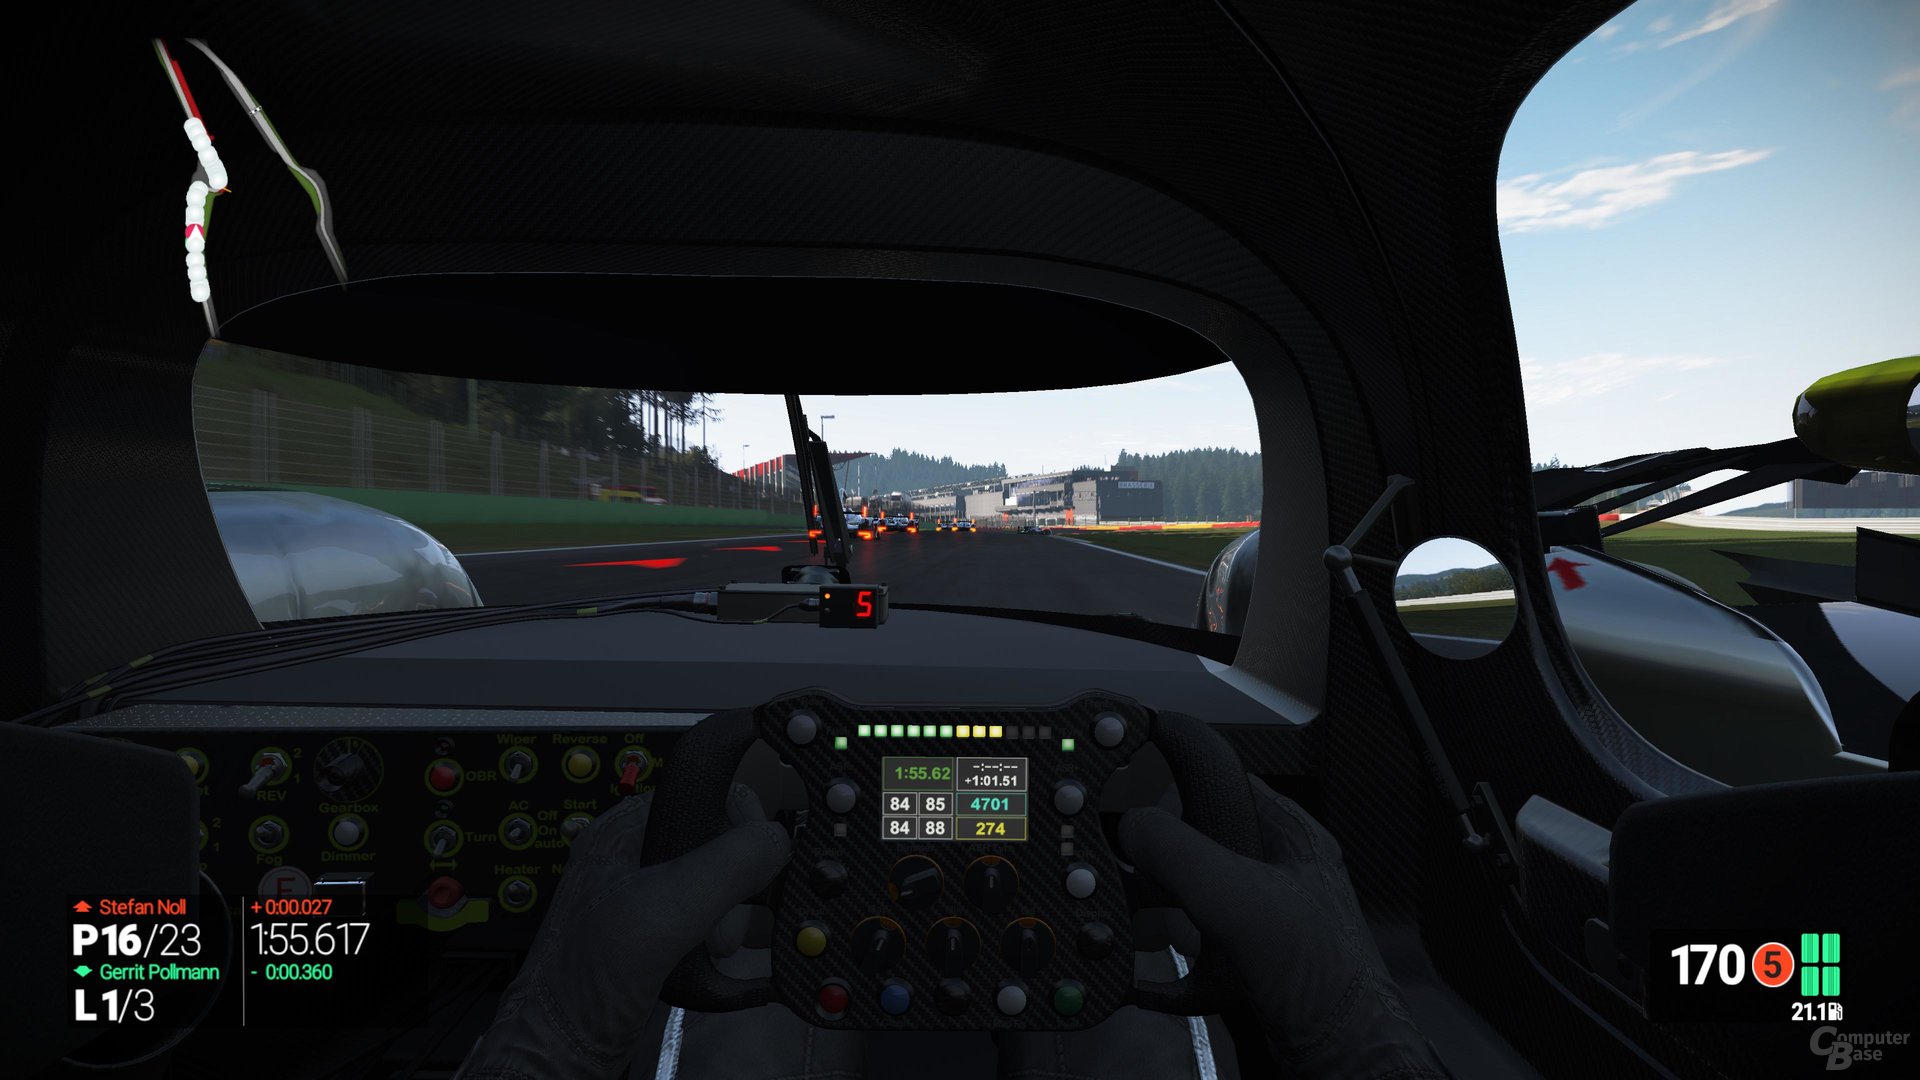 Schlechte Sichtverhältnisse im LMP1-Cockpit